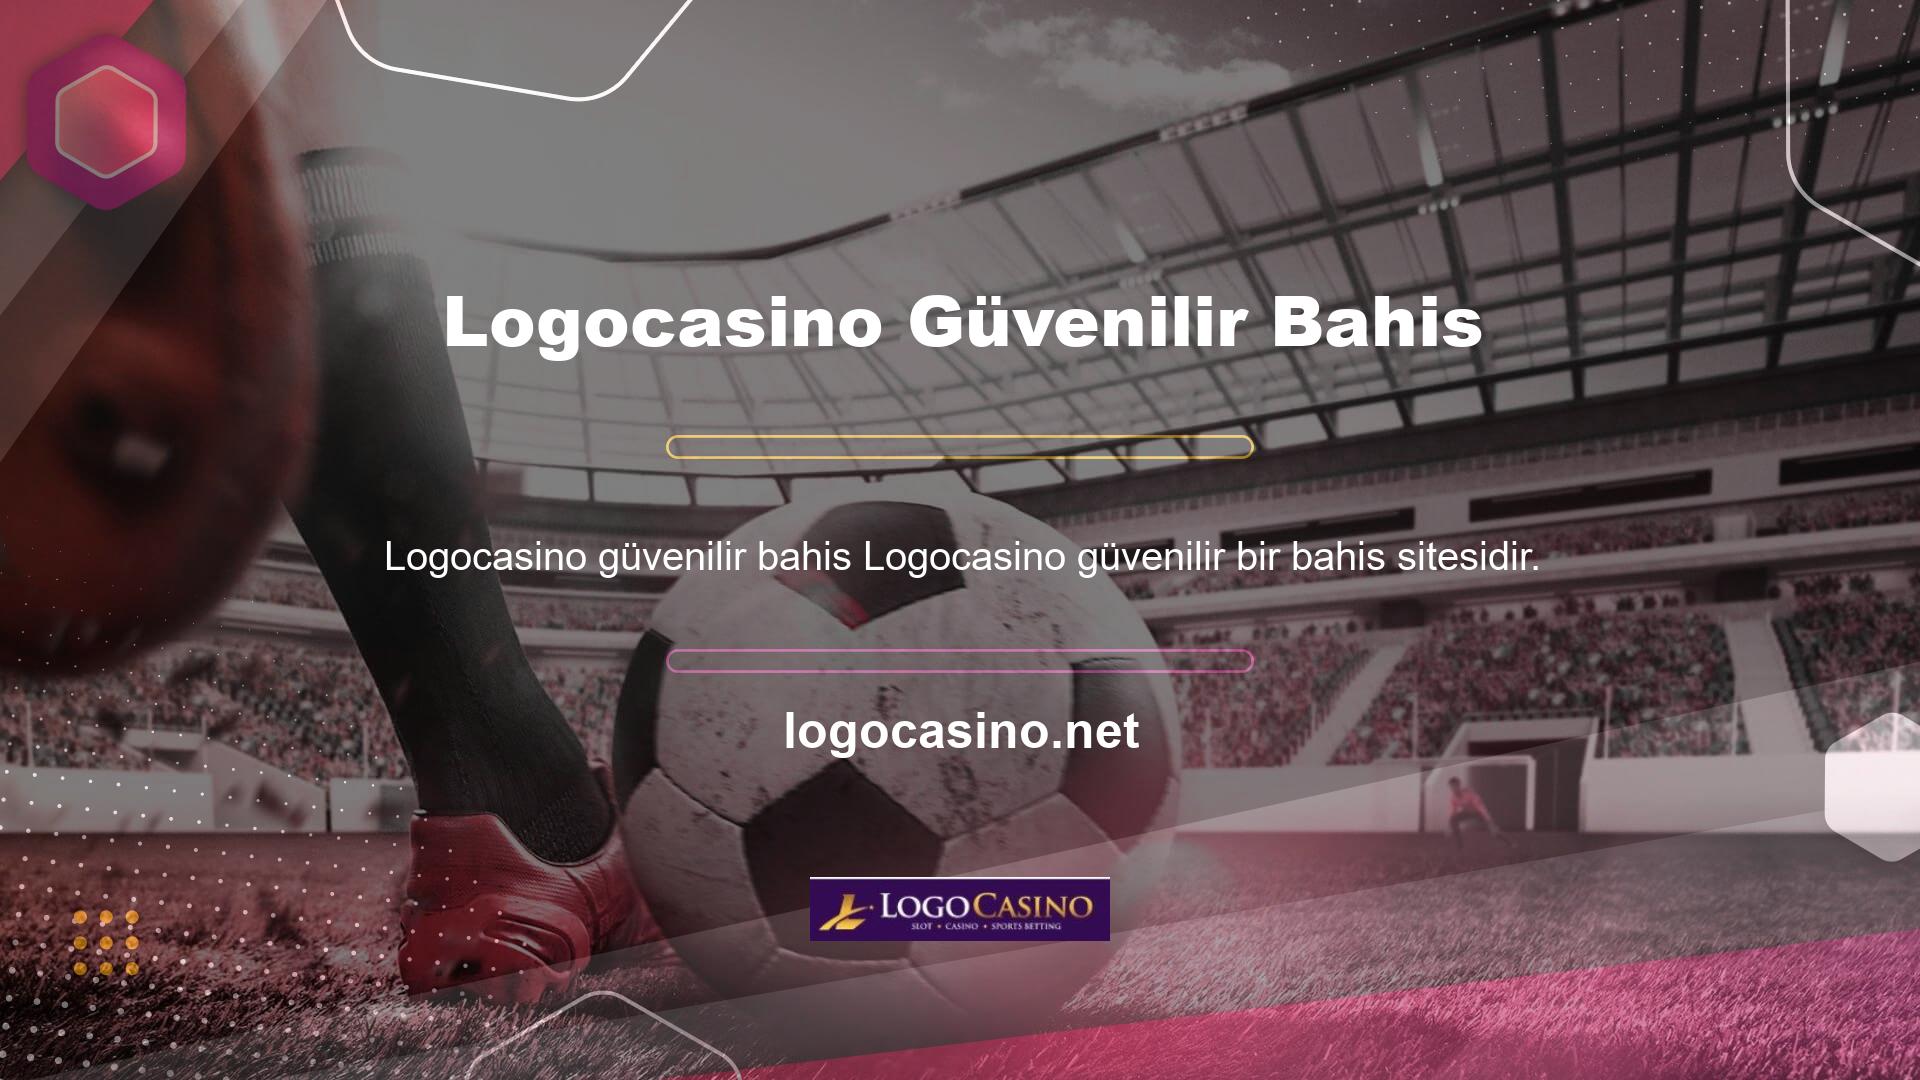 Logocasino web siteleri, erişim engellenmiş olsa bile üyelerin adres değişikliği mağduru olmamalarını sağlar